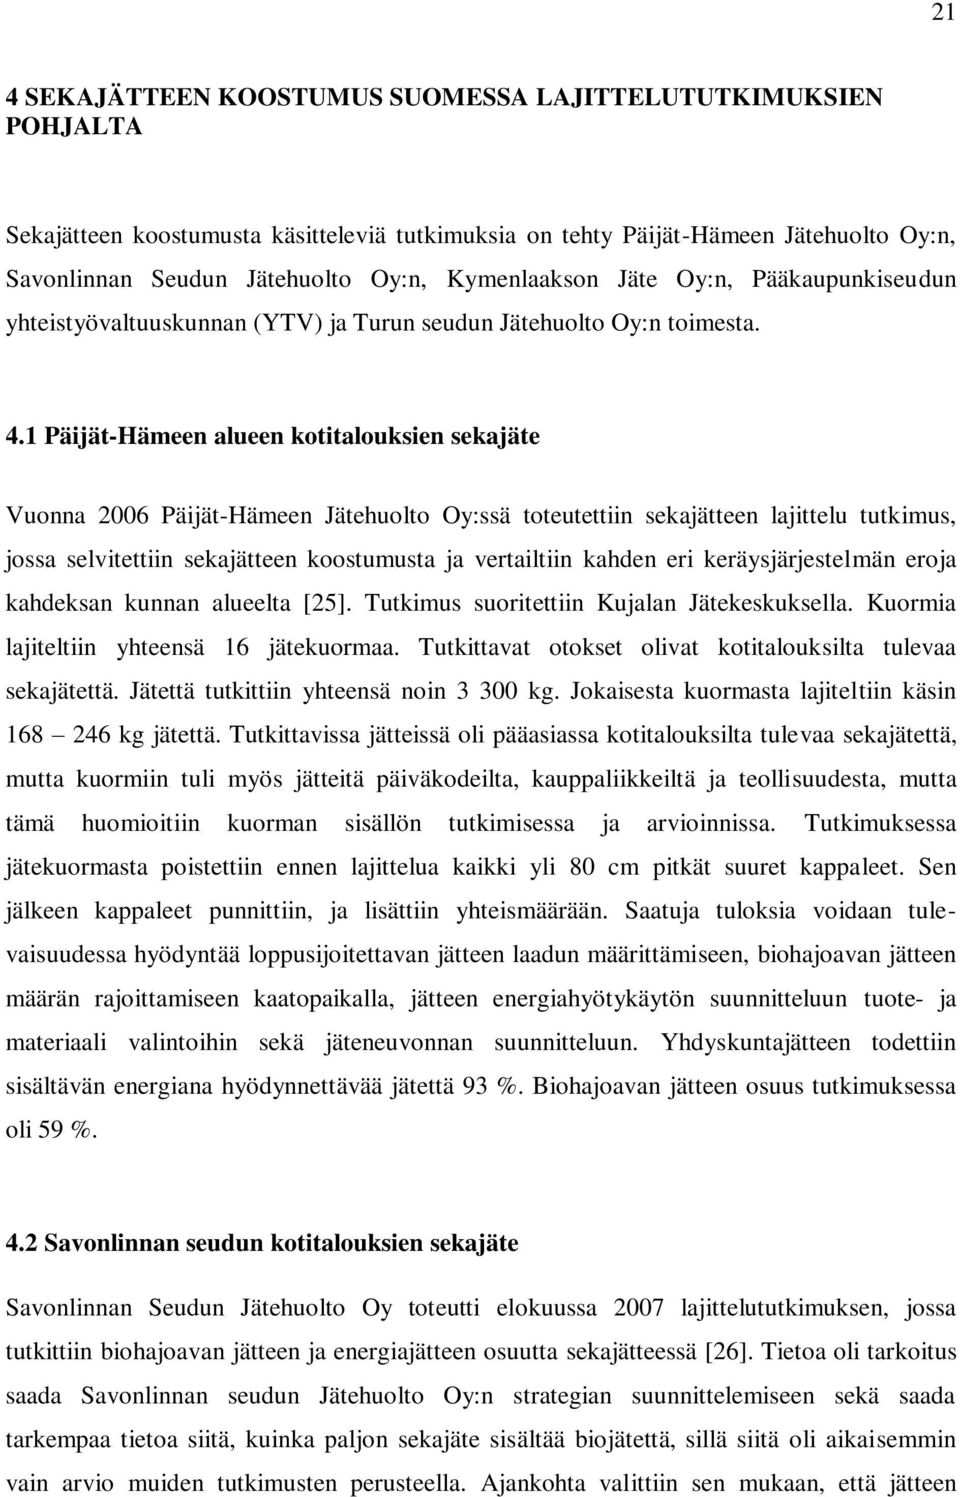 1 Päijät-Hämeen alueen kotitalouksien sekajäte Vuonna 2006 Päijät-Hämeen Jätehuolto Oy:ssä toteutettiin sekajätteen lajittelu tutkimus, jossa selvitettiin sekajätteen koostumusta ja vertailtiin